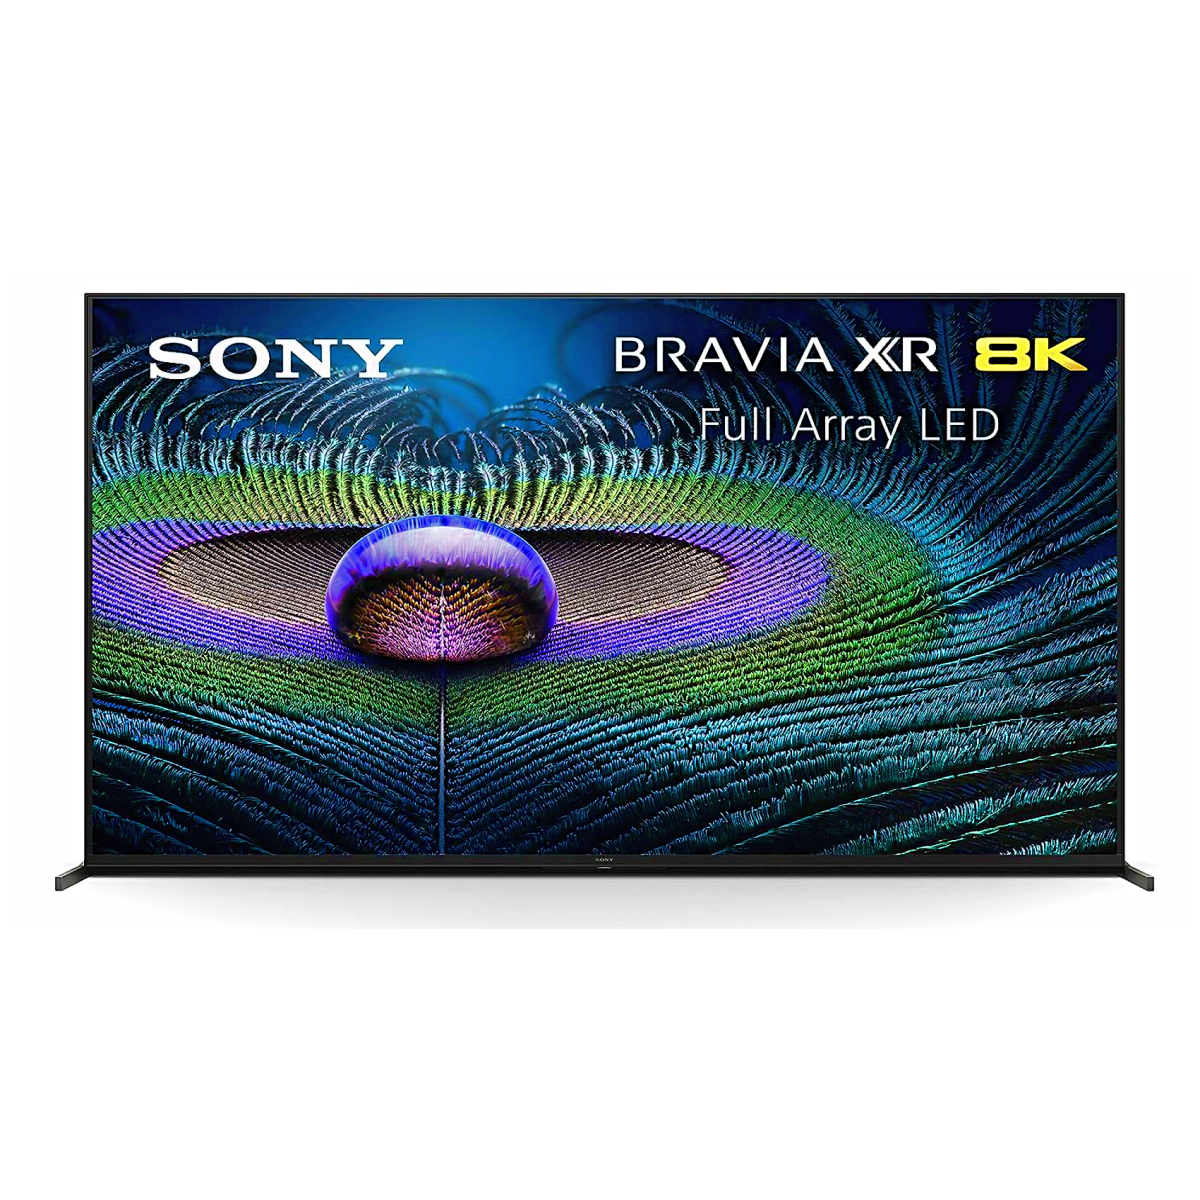 A Sony Bravia XR Z9J LED TV